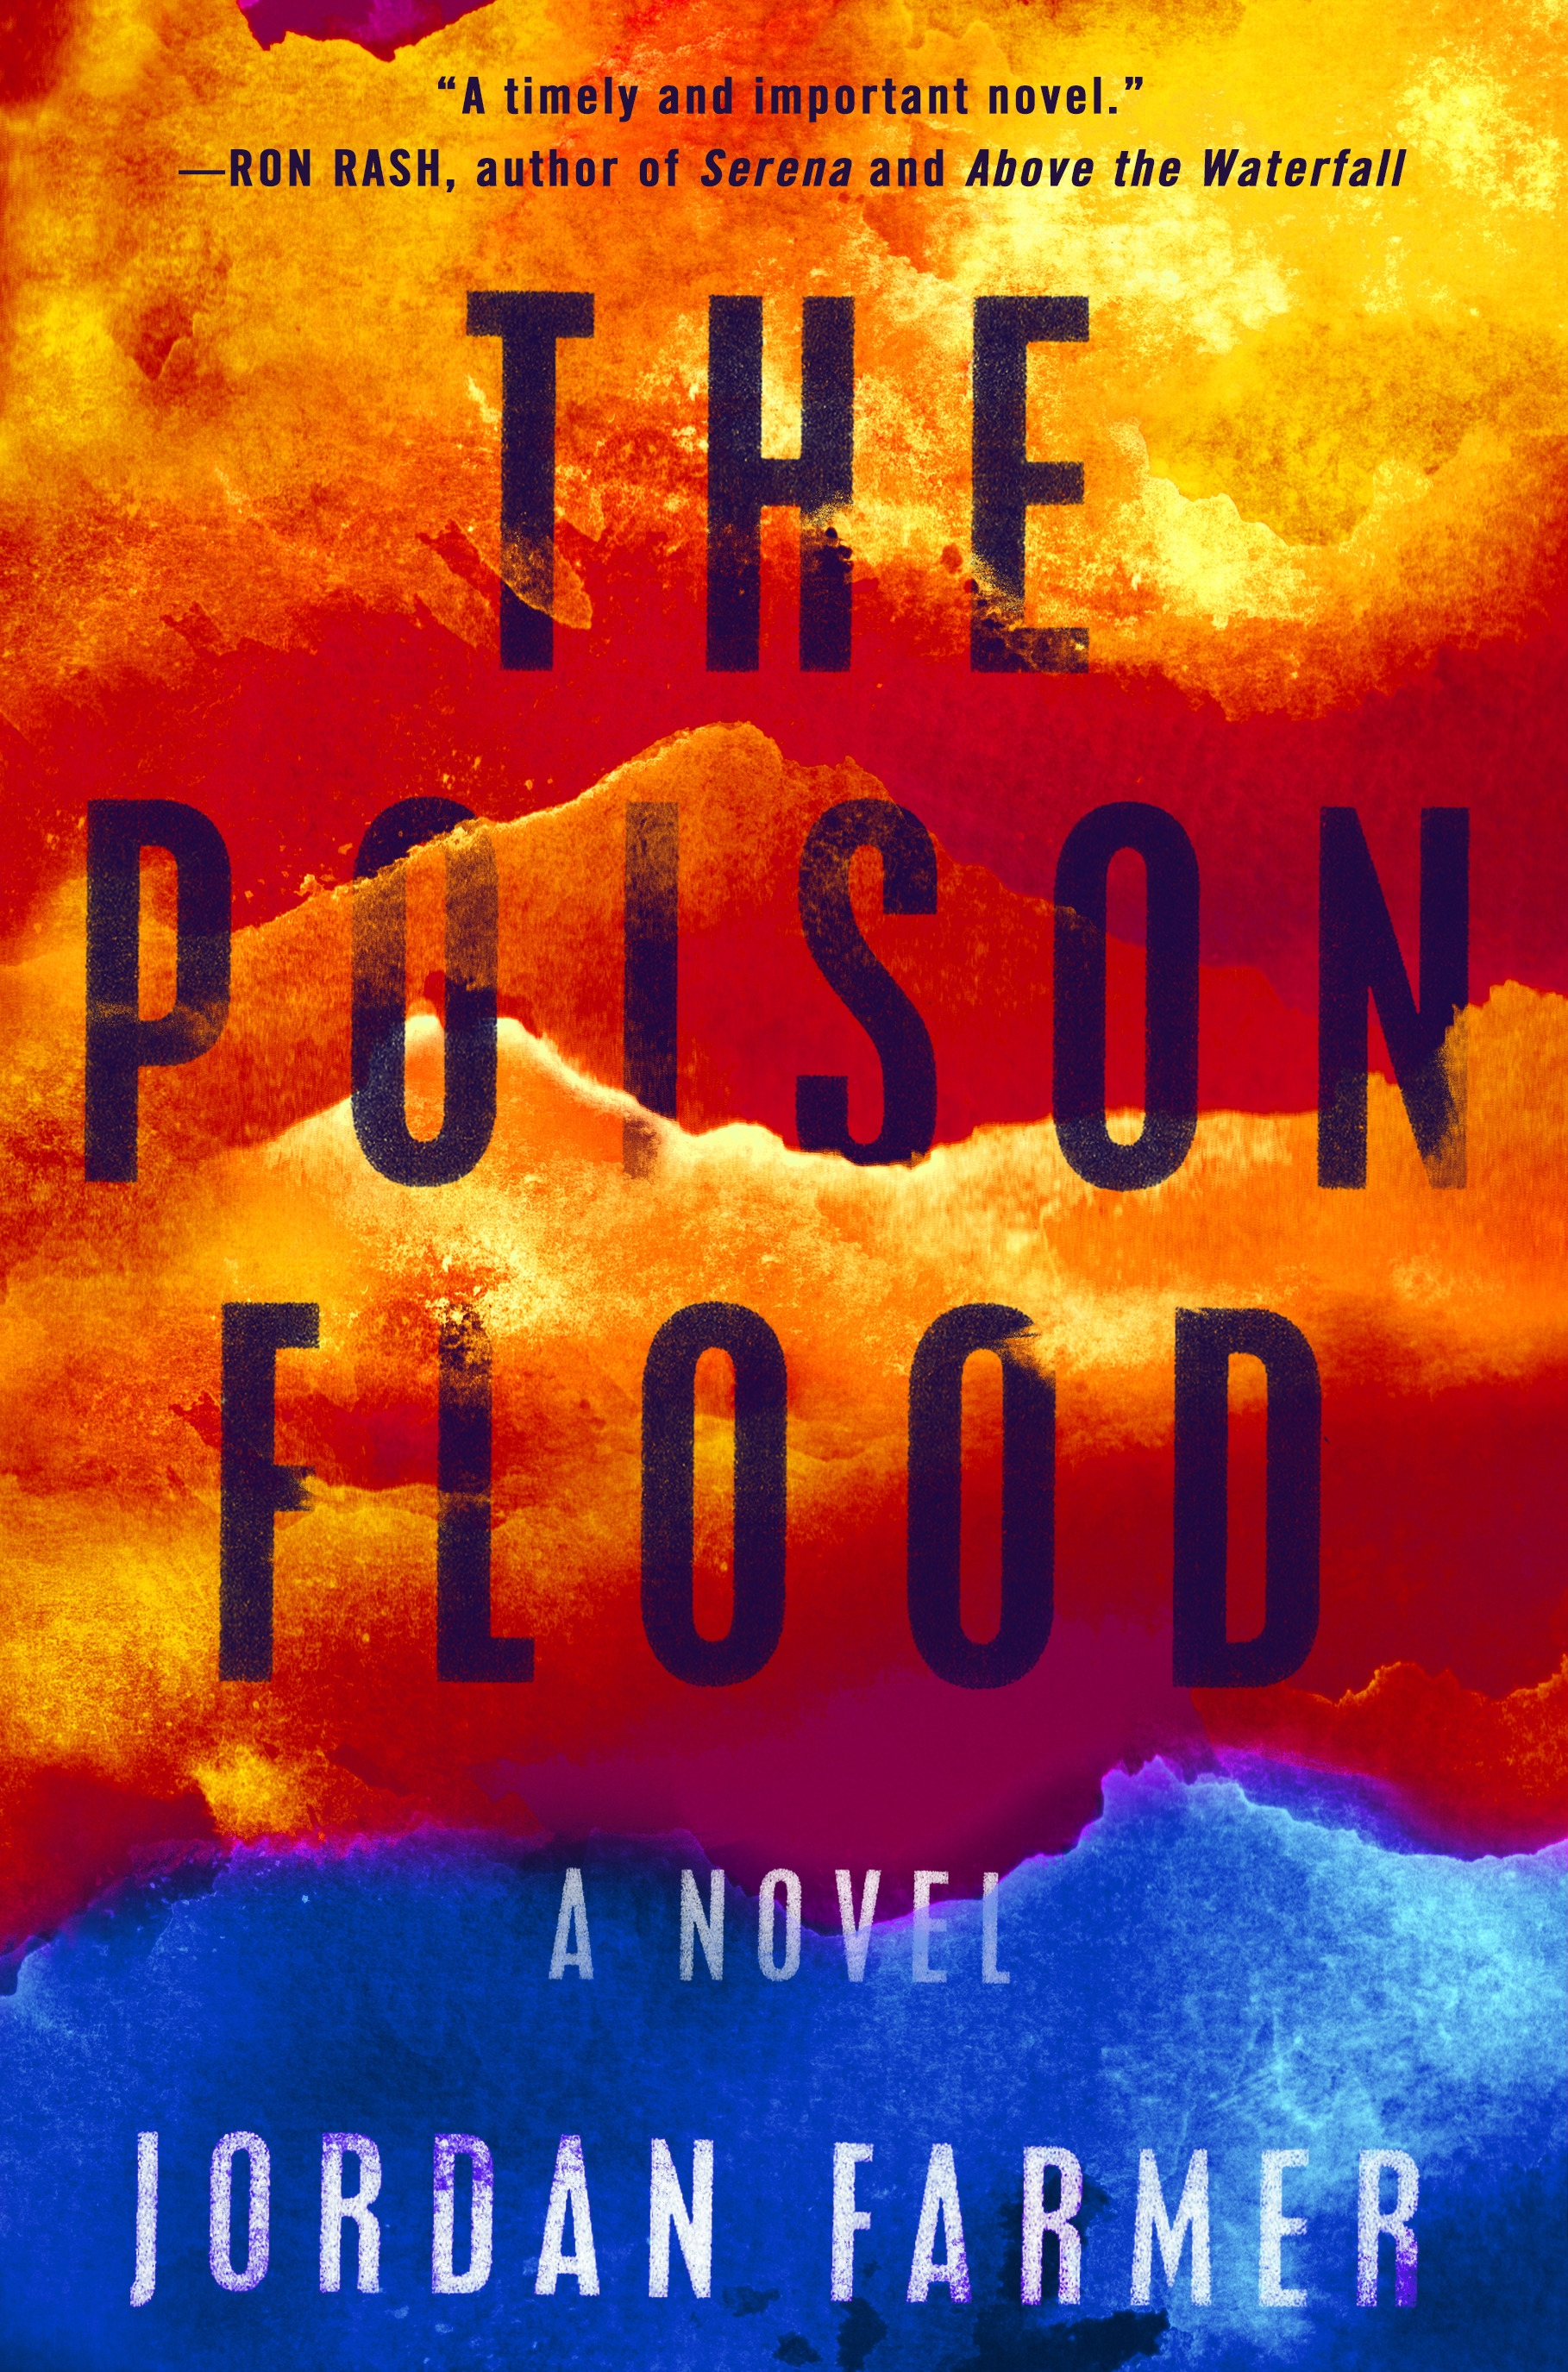 The Poison Flood by Jordan Farmer - Penguin Books Australia